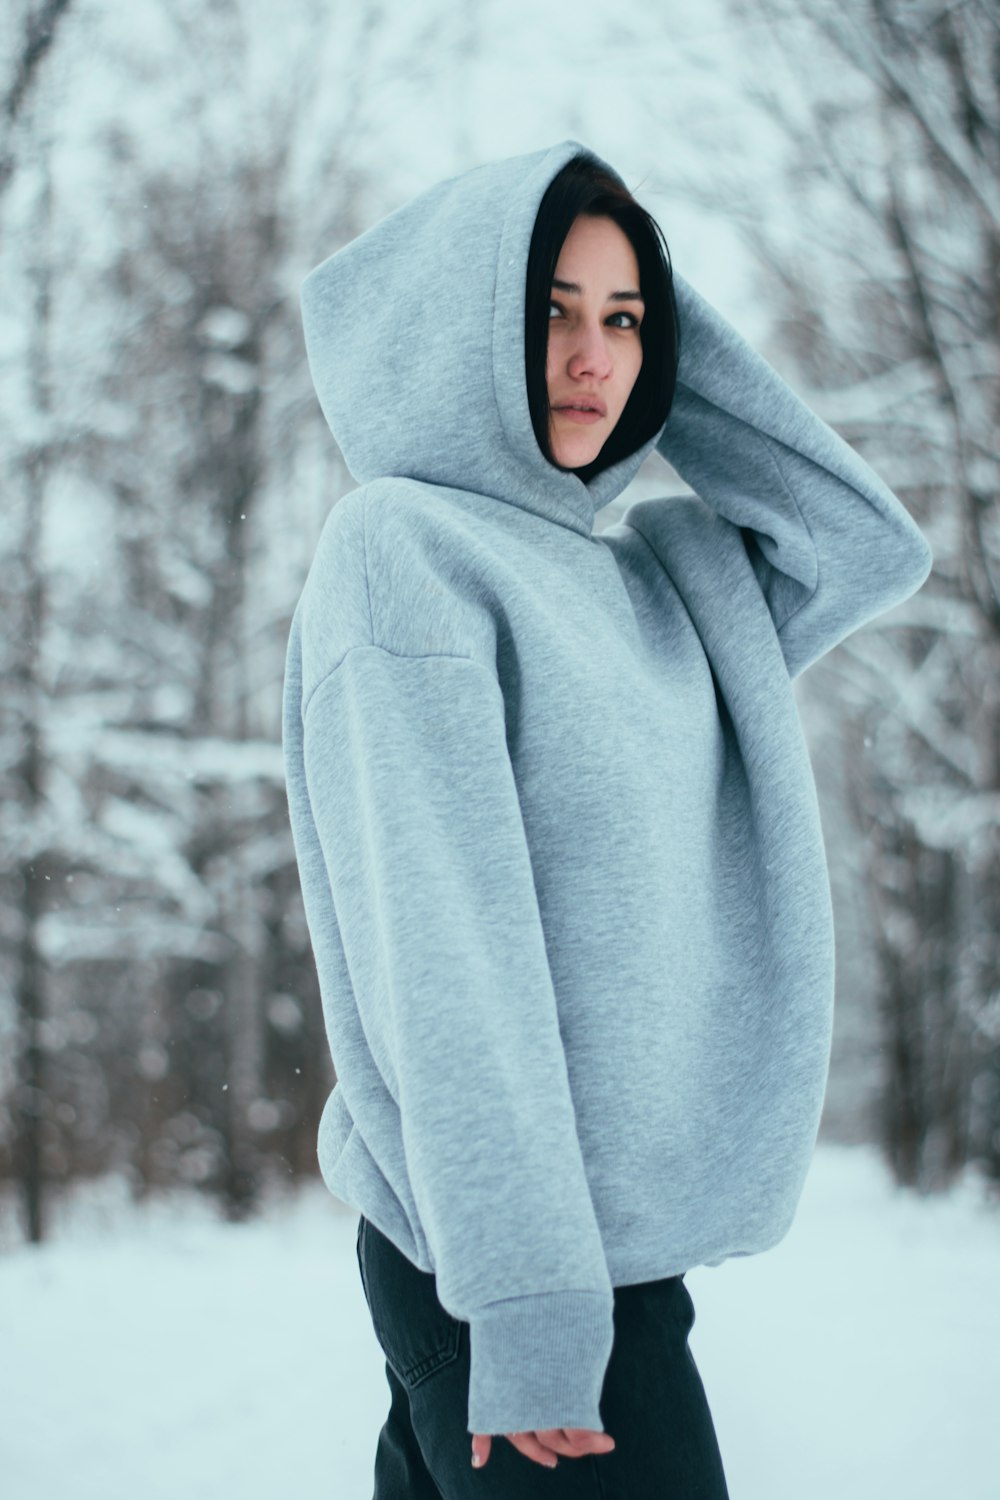 Una donna che indossa una felpa con cappuccio nella neve foto – Bielorussia  Immagine gratuita su Unsplash